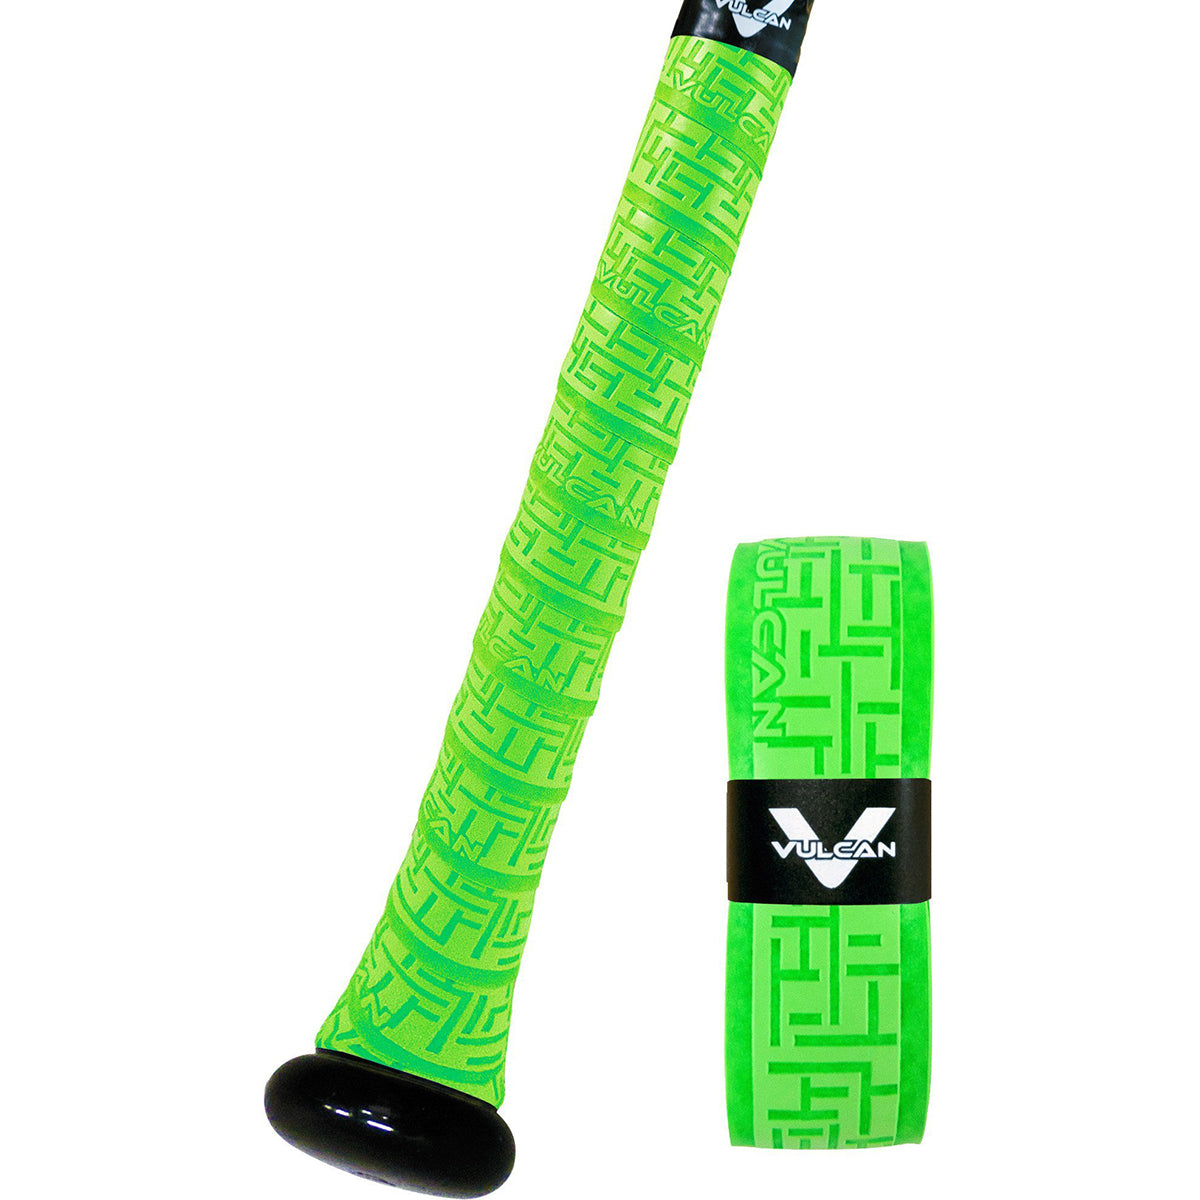 Vulcan Solid Series 1.75mm Ultralight Advanced Polymer Bat Grip Tape Wrap Vulcan